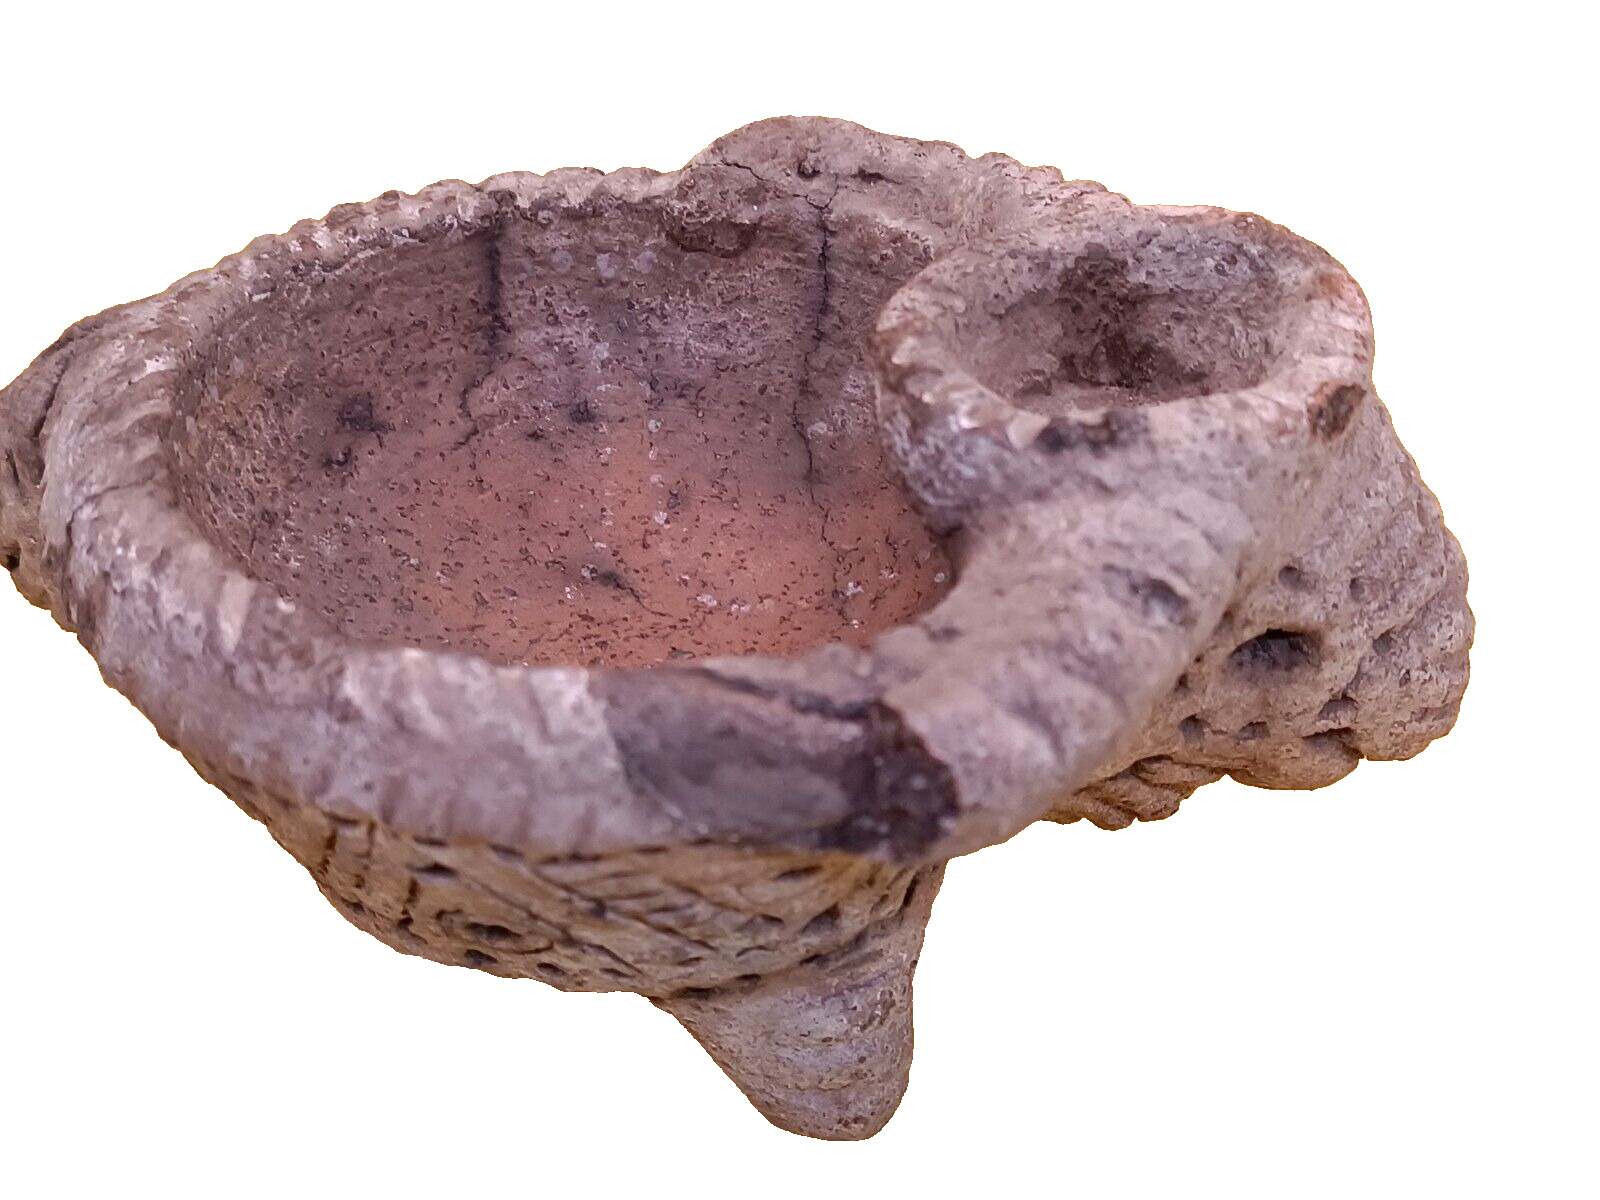 Antique Ceramic figurine Ornament. Trypillia culture 5400 and 2750 BC